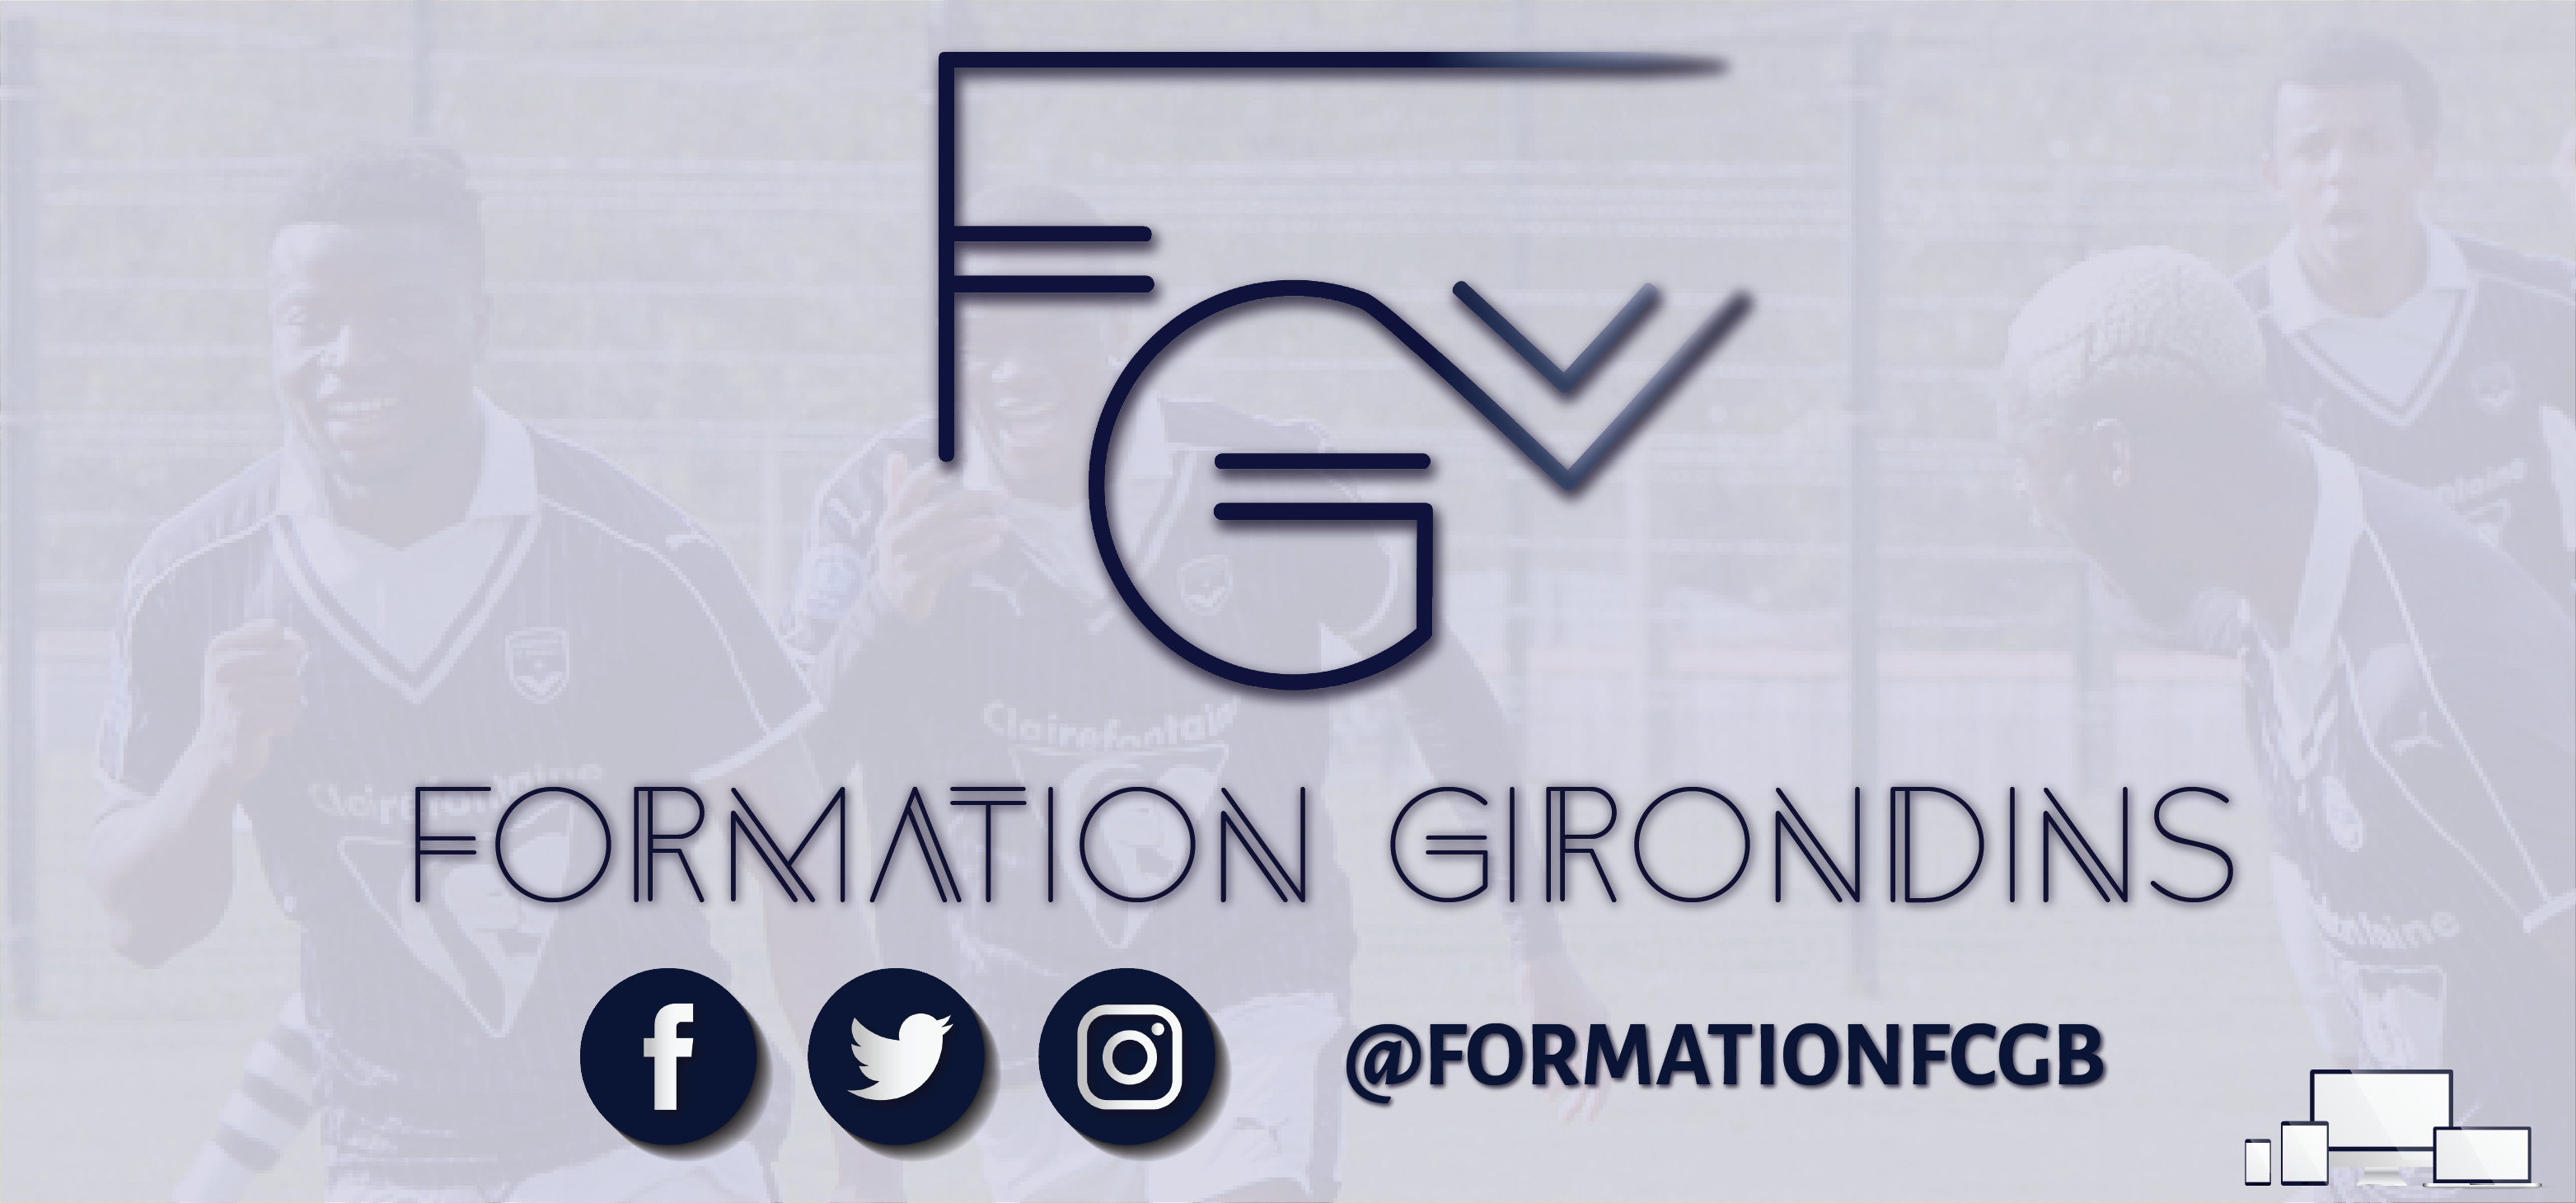 Cfa Girondins : CfaGirondins devient Formation Girondins ! - Formation Girondins 